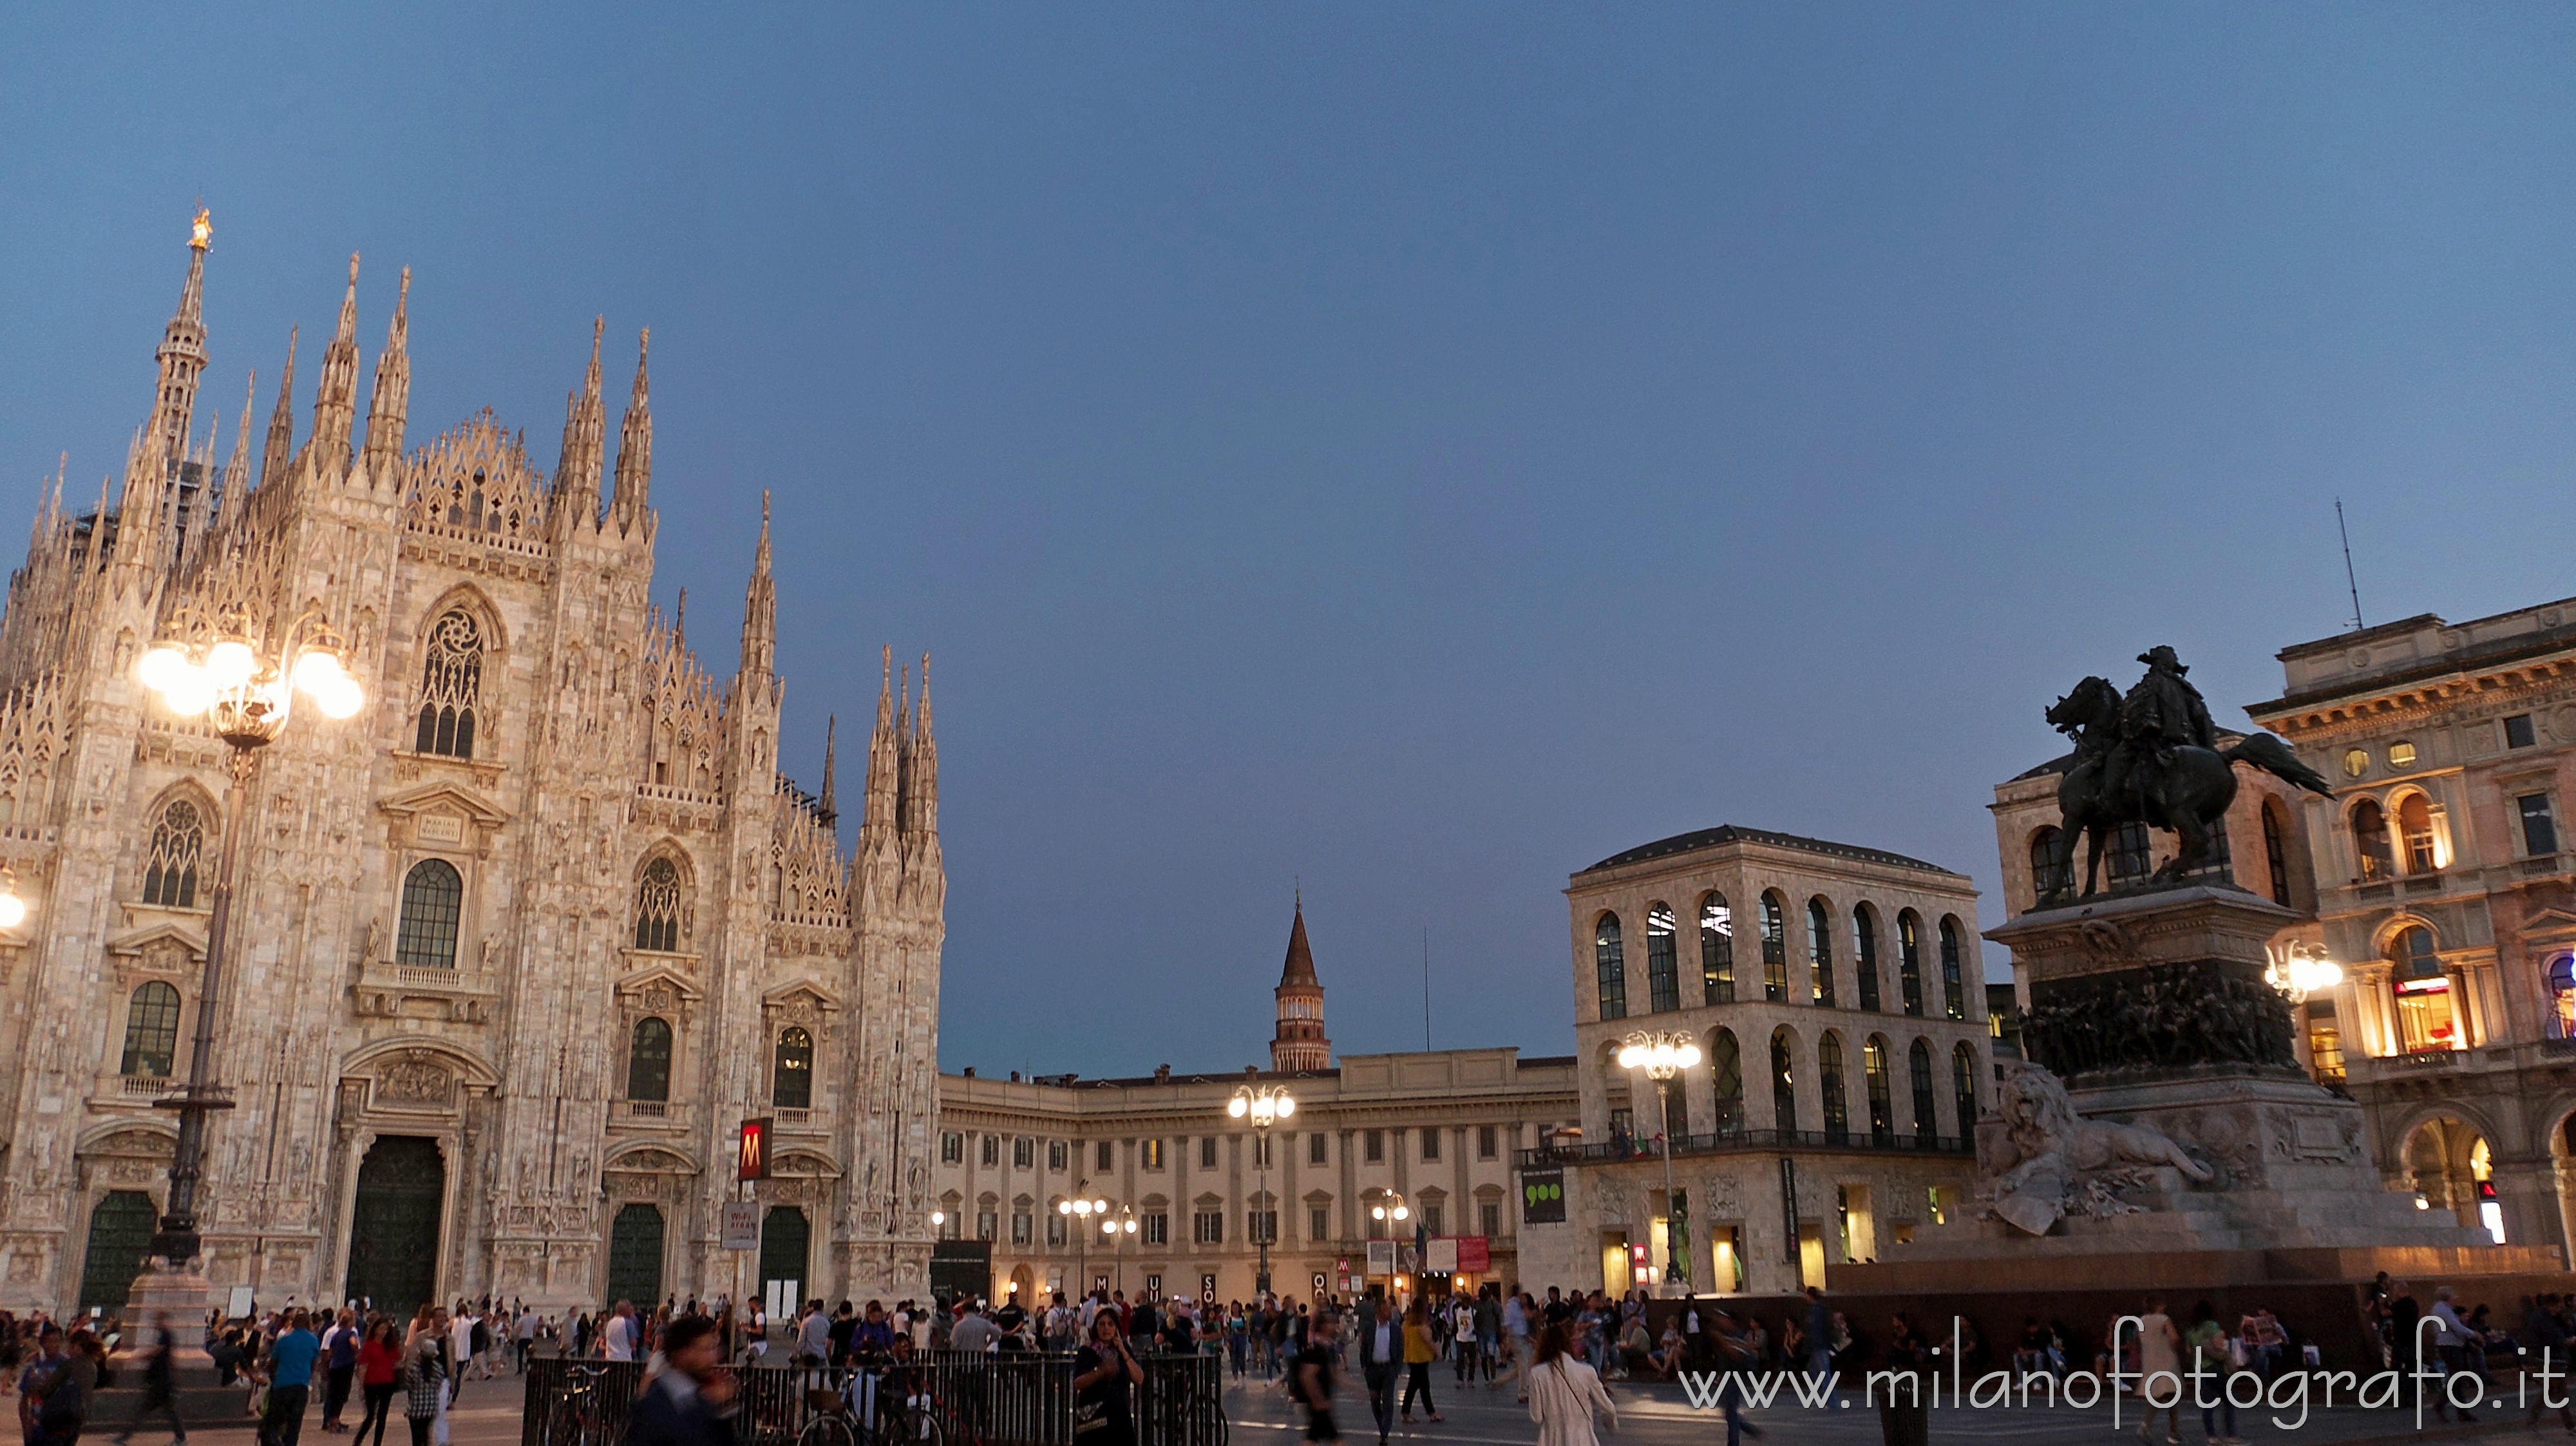 Milan (Italy): Duomo square at darkening - Milan (Italy)